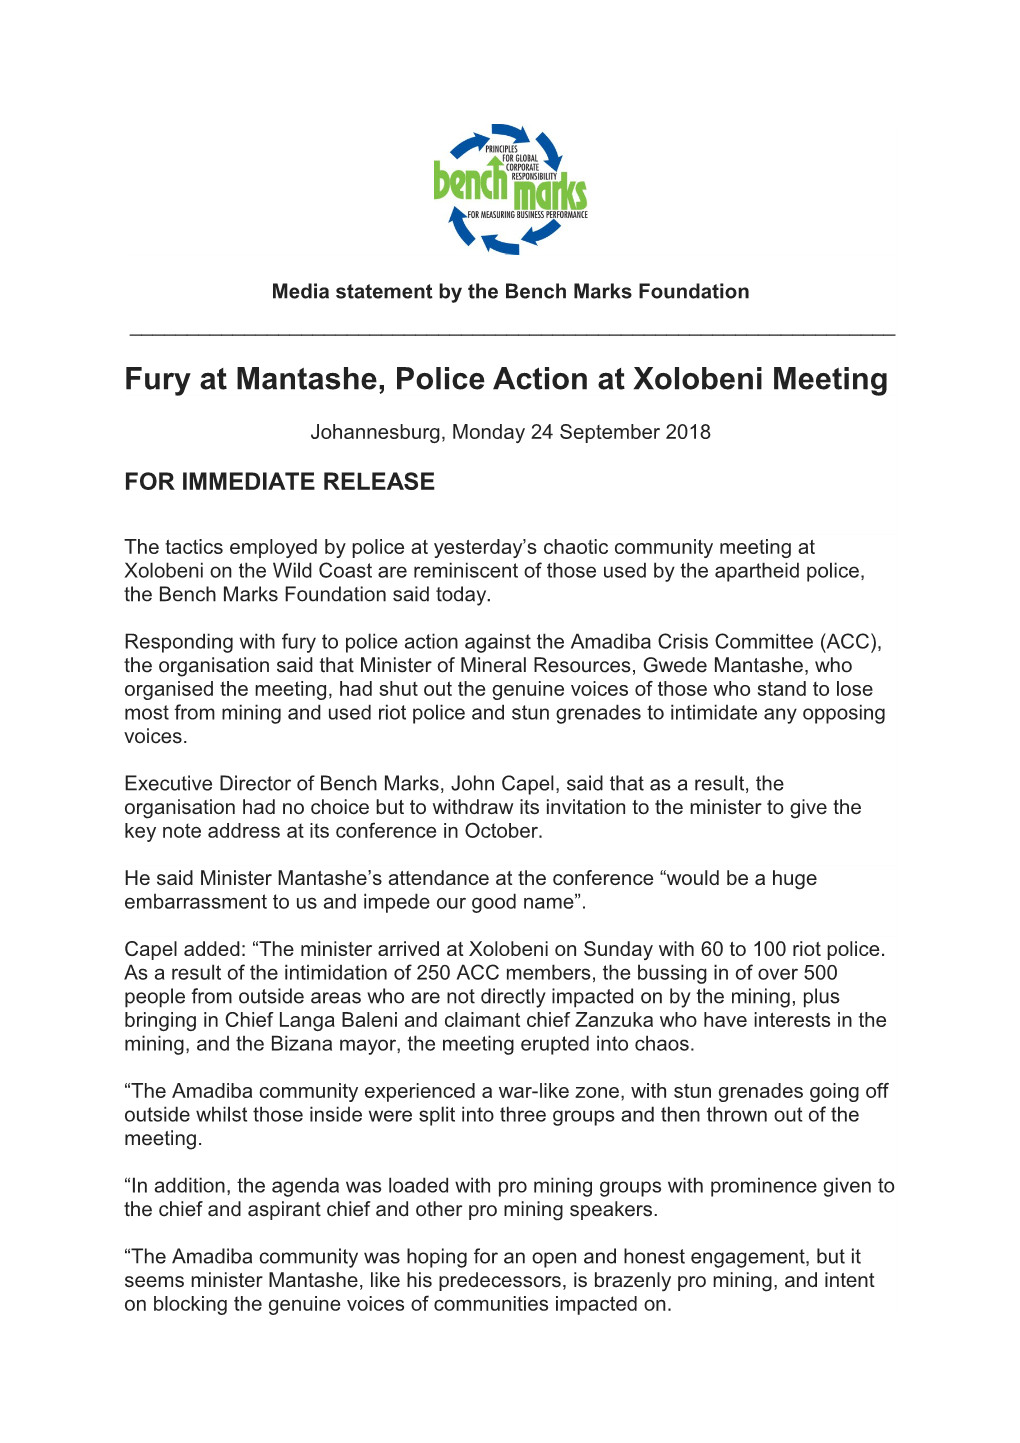 Fury at Mantashe, Police Action at Xolobeni Meeting